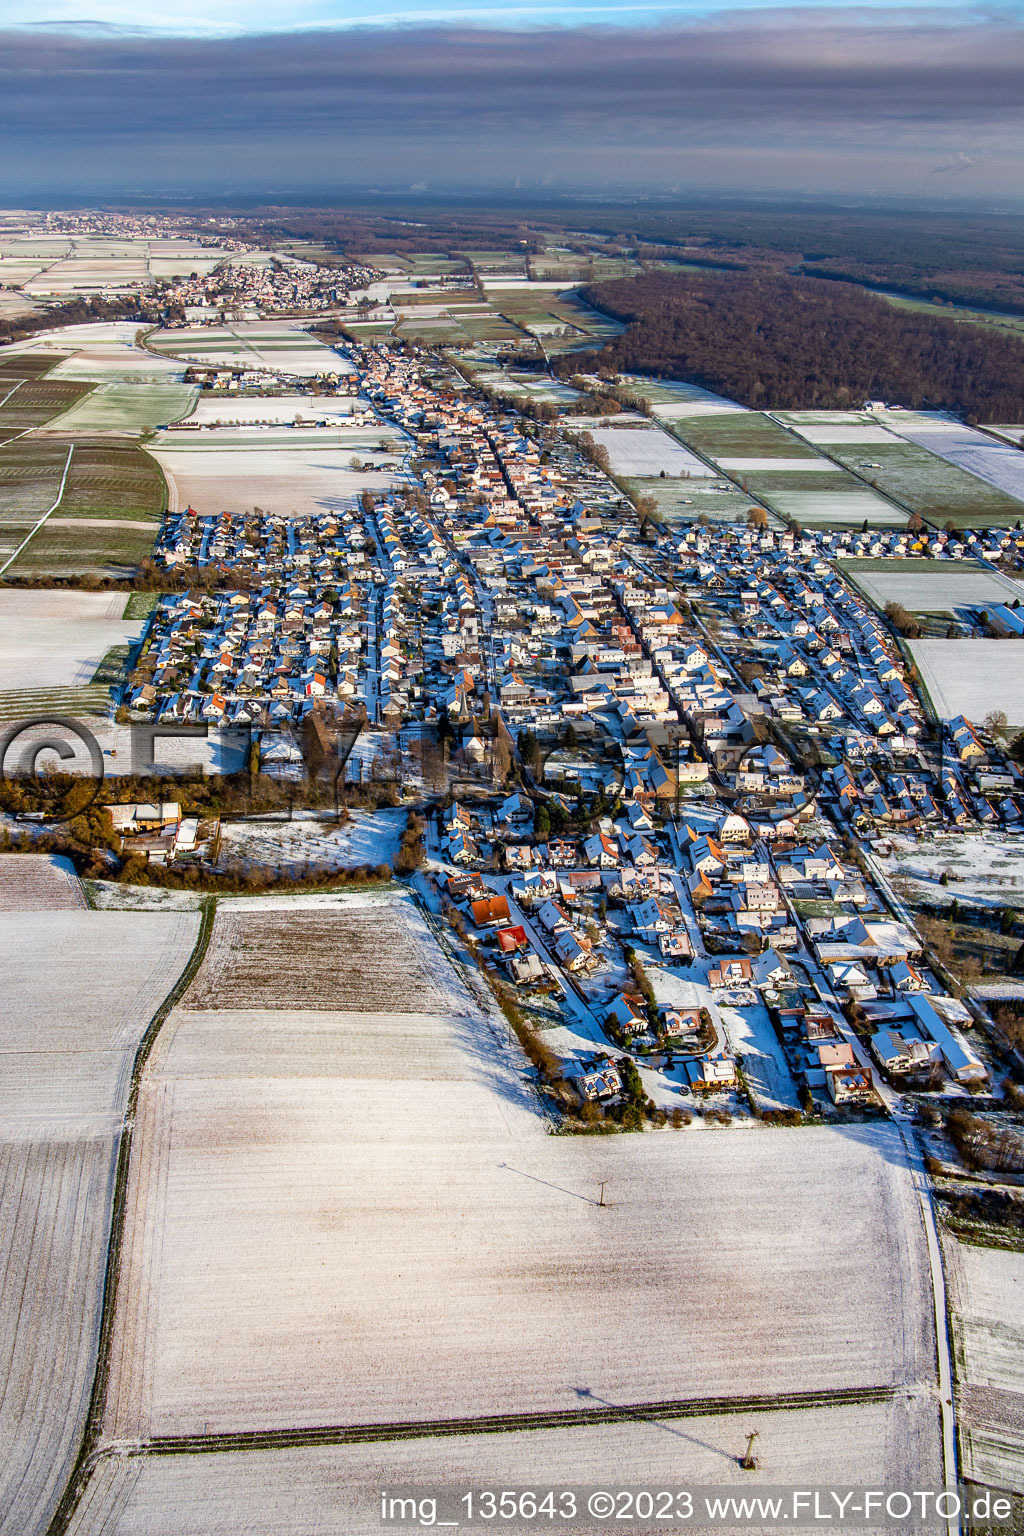 Vue aérienne de De l'ouest en hiver quand il y a de la neige à Freckenfeld dans le département Rhénanie-Palatinat, Allemagne